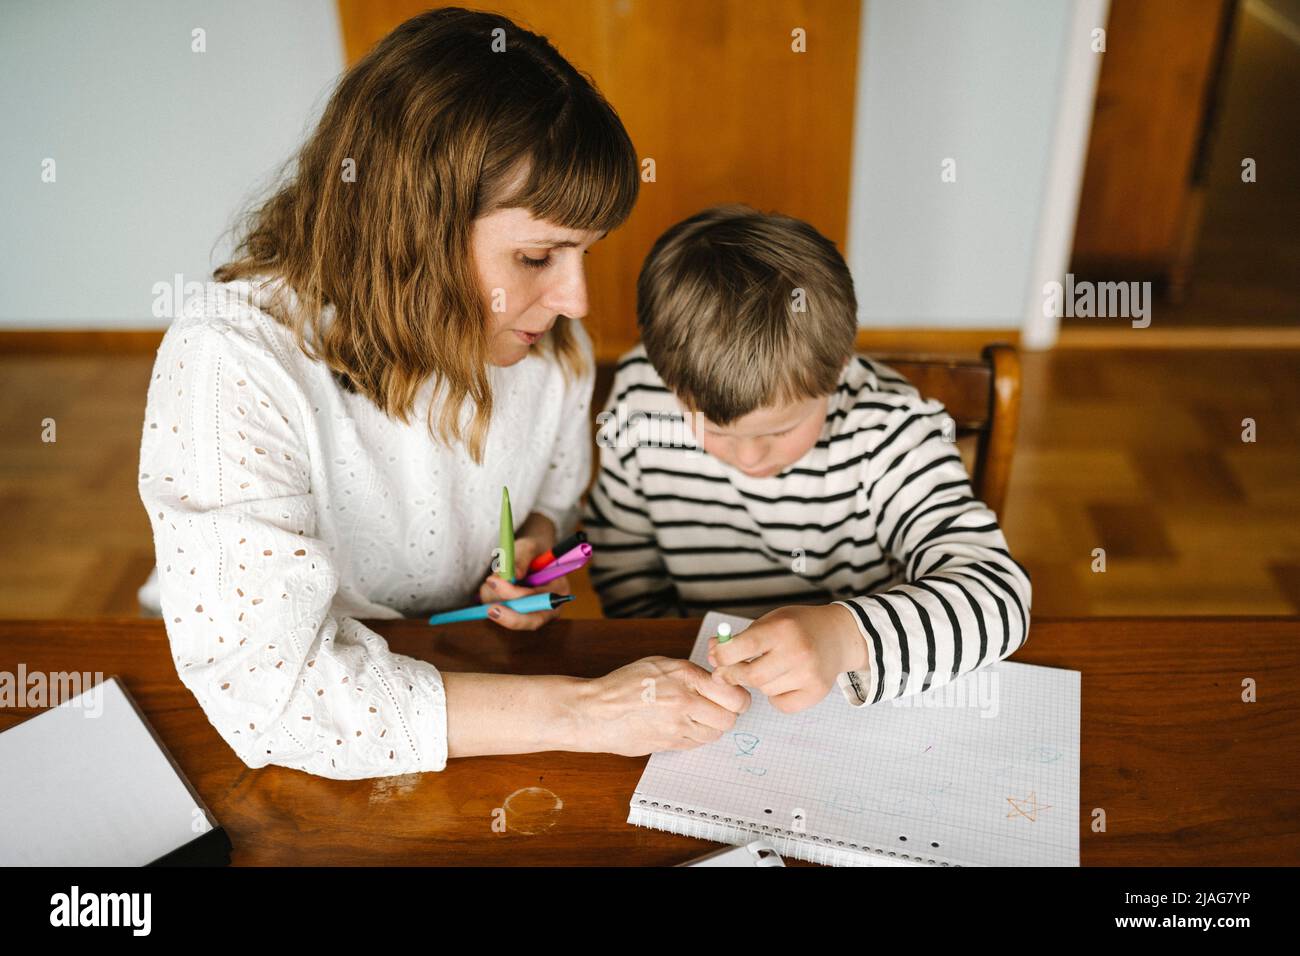 Aus einem hohen Winkel betrachtet, wie die Mutter dem Sohn mit Down-Syndrom beibringt, ein Buch am Tisch zu zeichnen Stockfoto